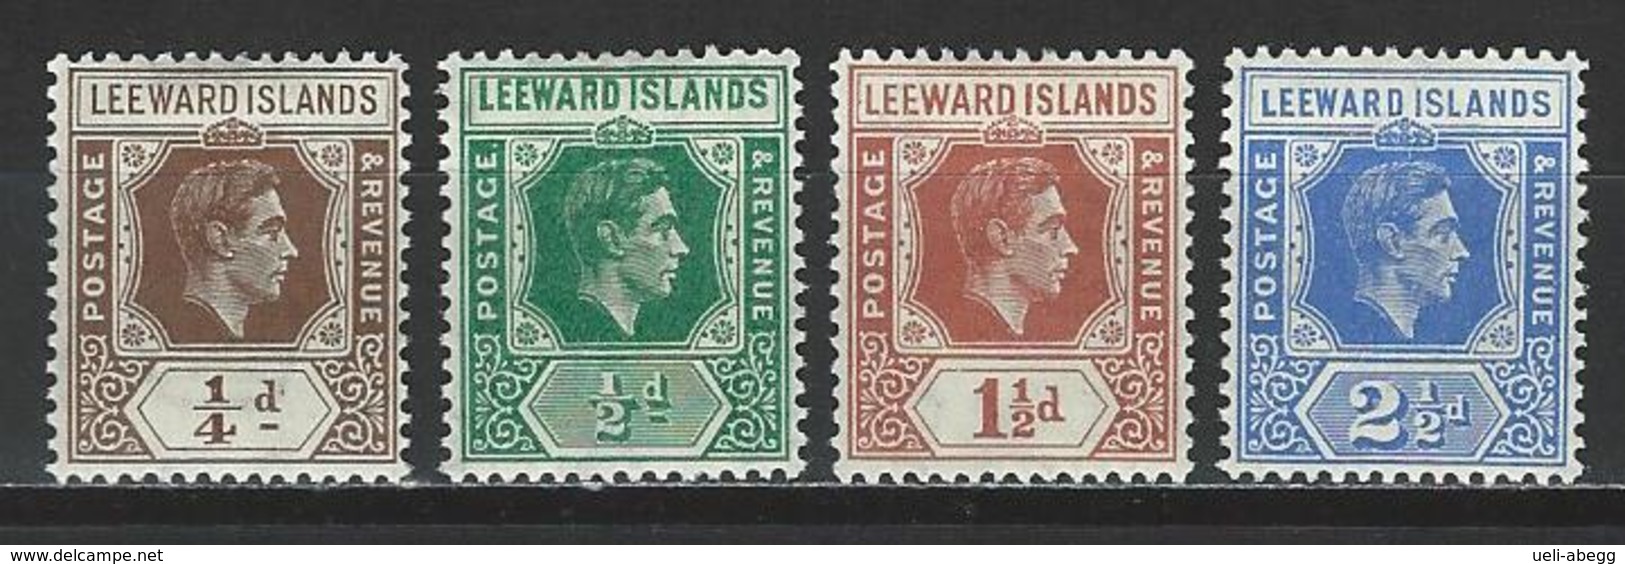 Leeward Islands SG 95a, 96, 101, 105a, Mi 87, 88, 92, 96 * MH - Leeward  Islands